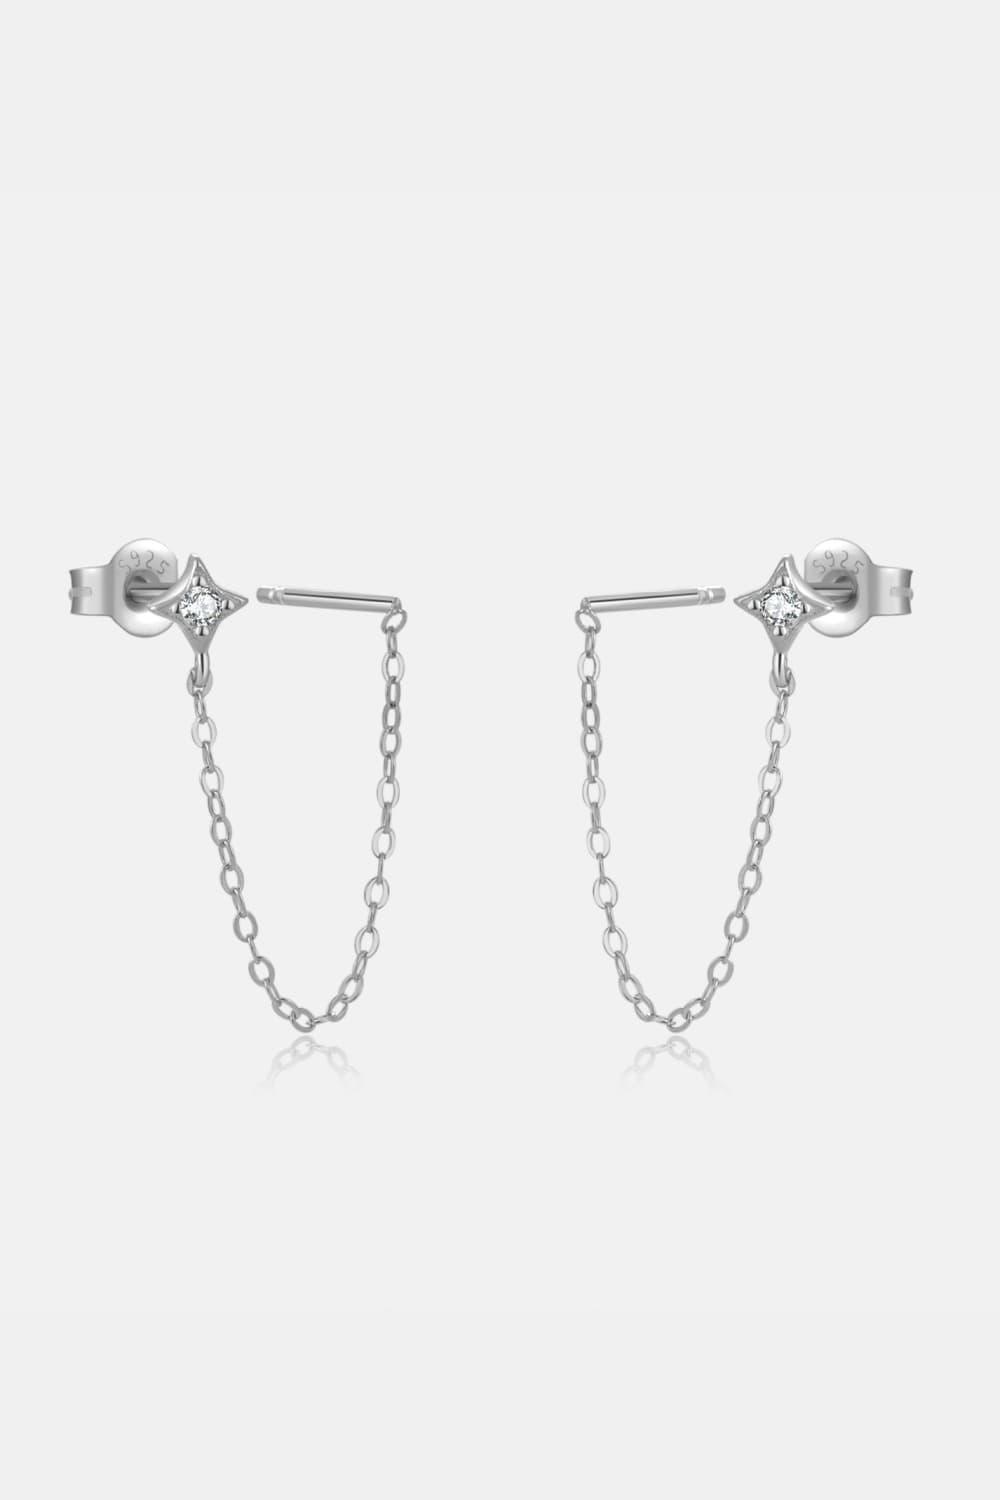 Worthiness Inlaid Zircon Long Chain Stud Earrings - MXSTUDIO.COM